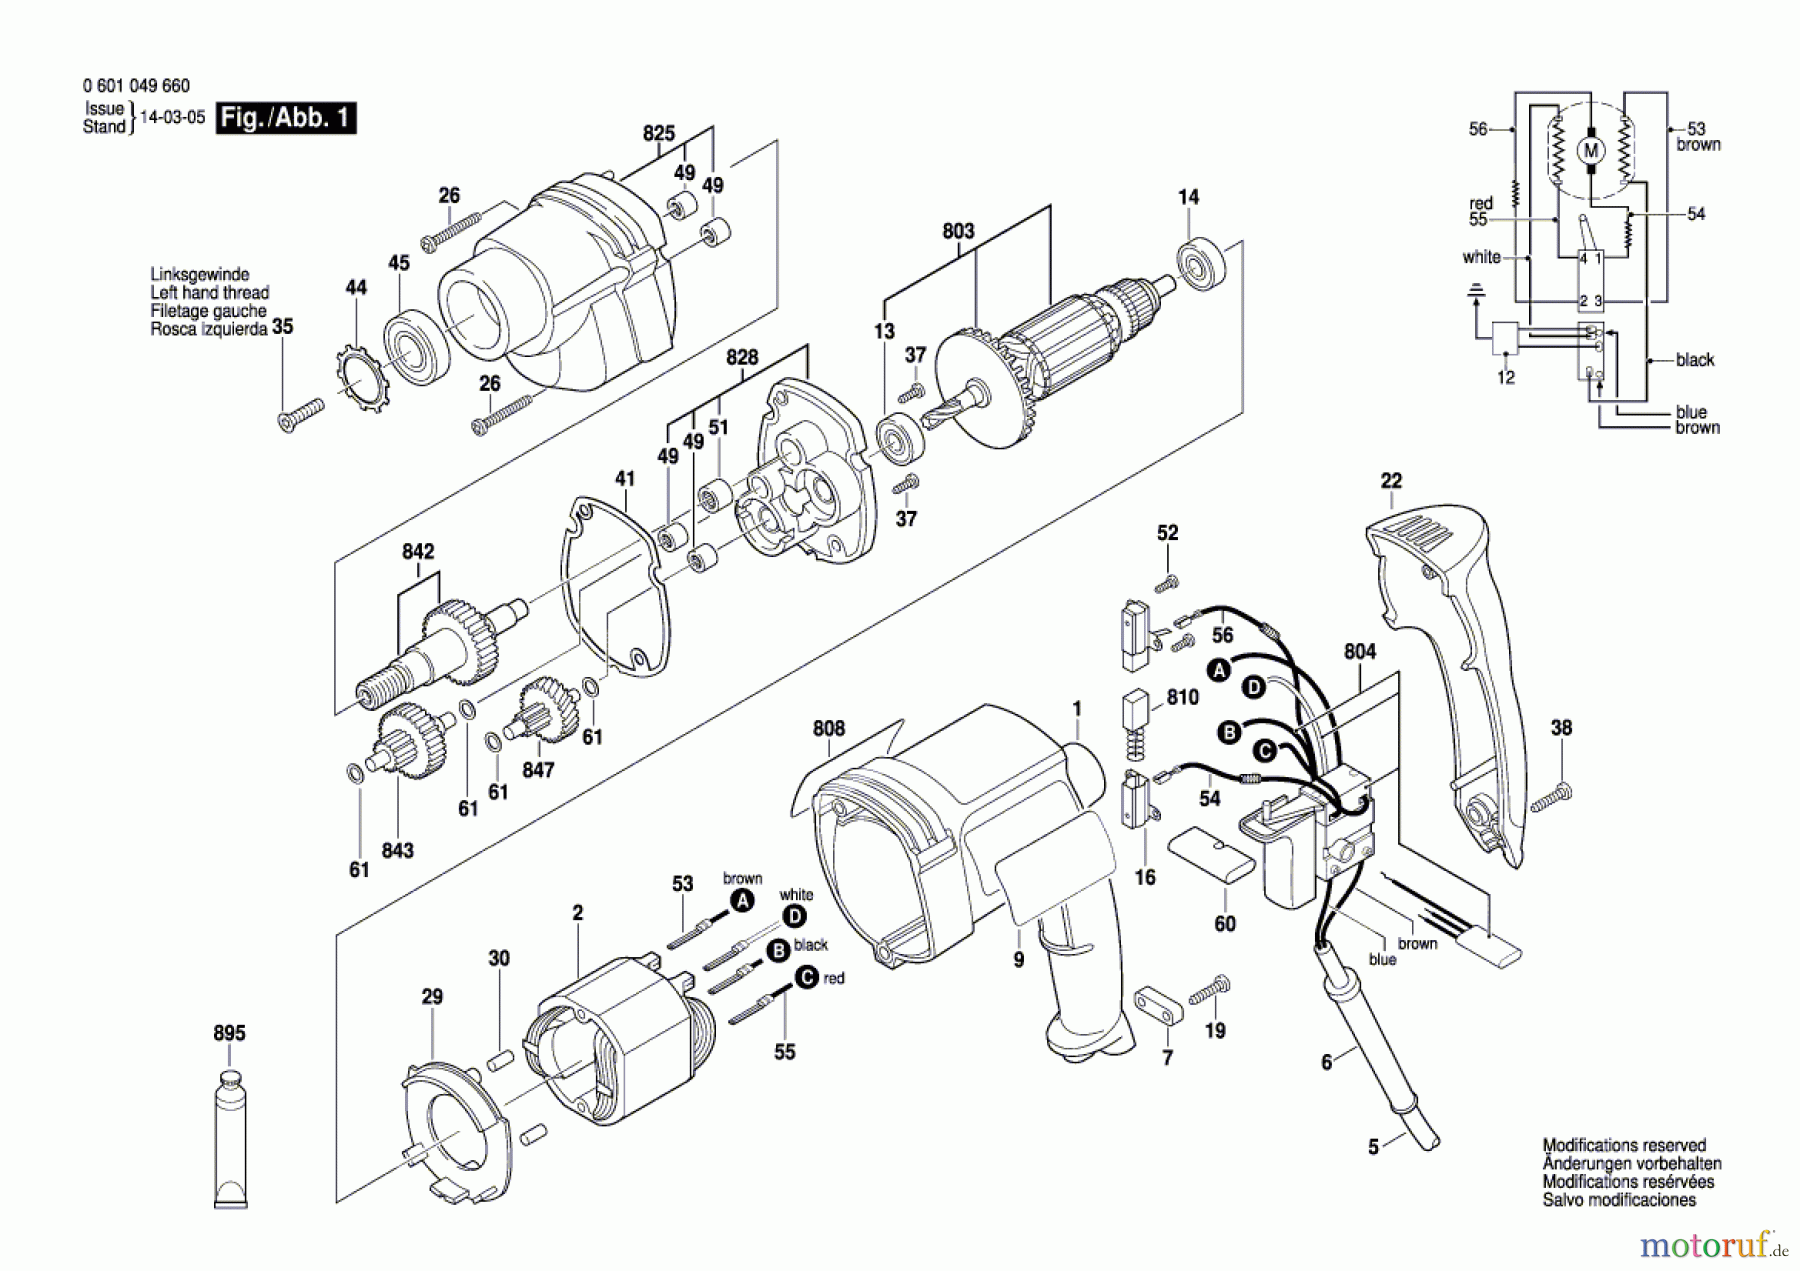  Bosch Werkzeug Bohrmaschine K3959 Seite 1